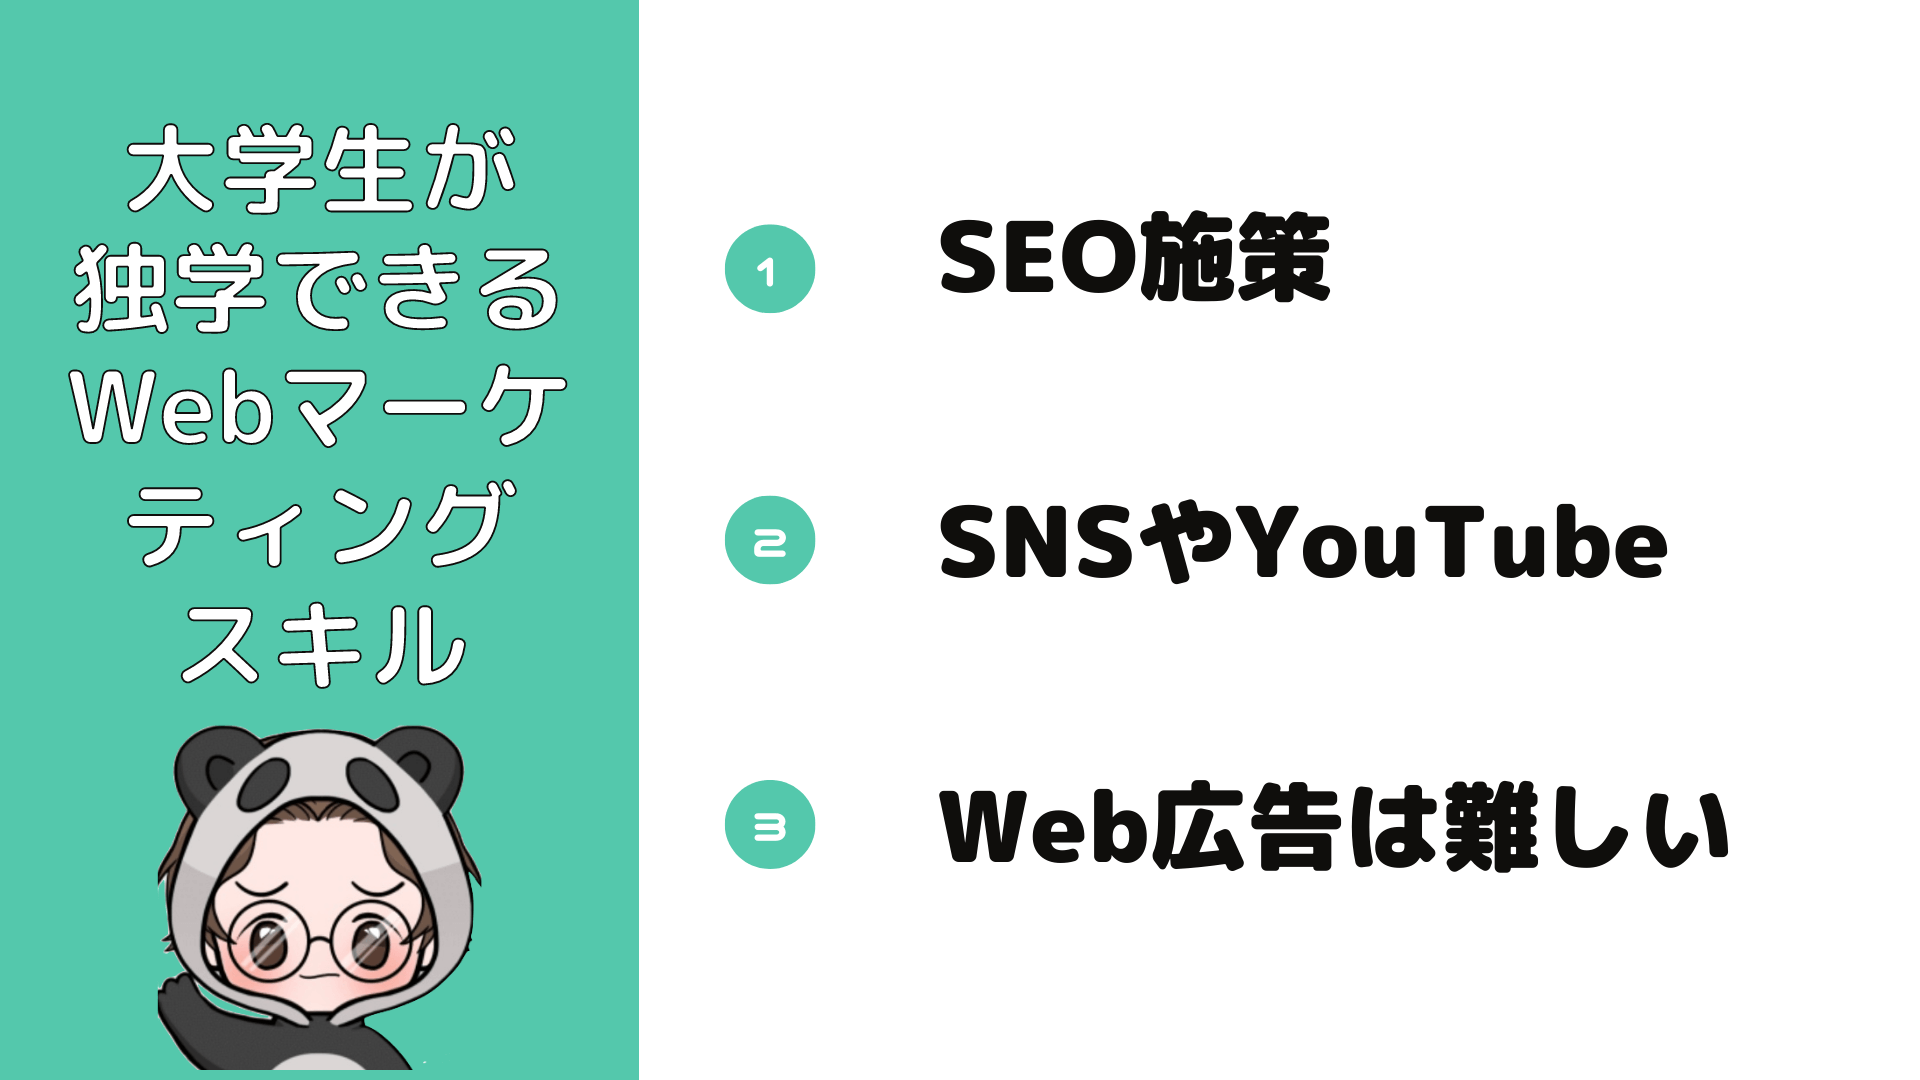 Webマーケティング_独学_大学生_大学生でも独学で学べるWebマーケティングスキル